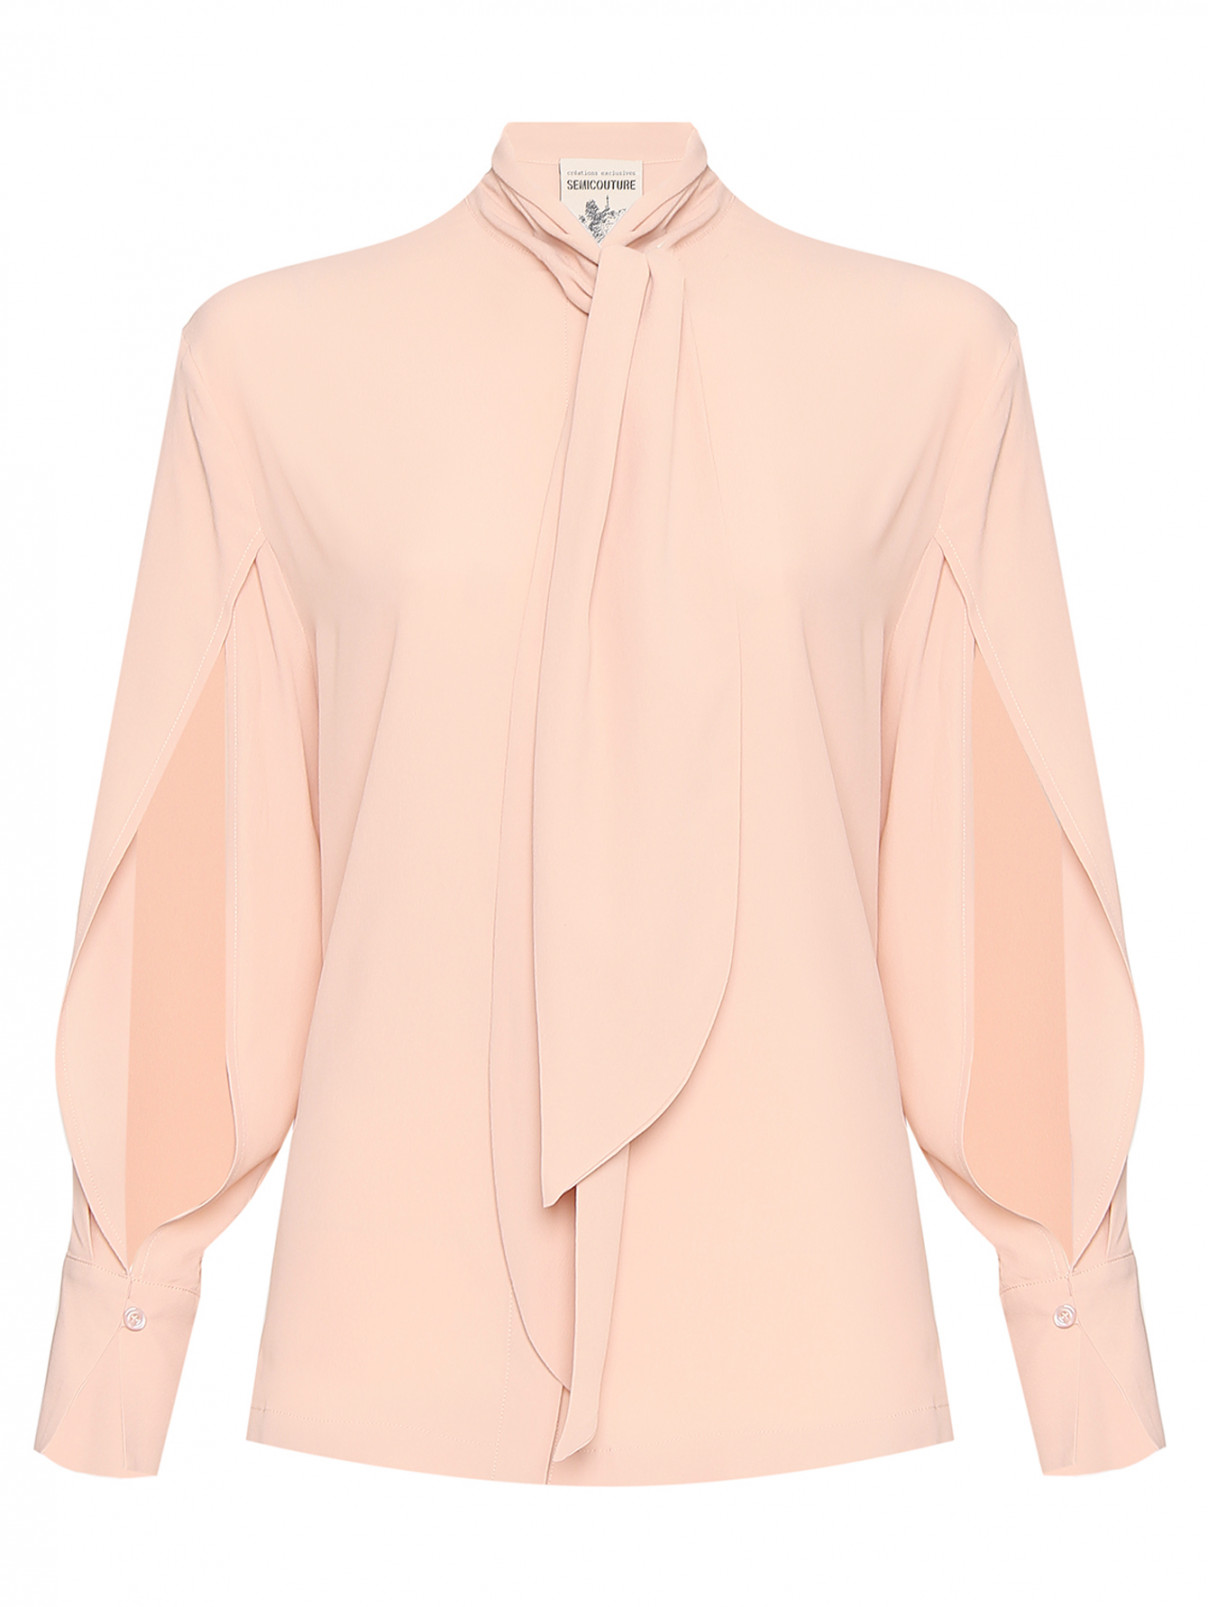 Блуза c разрезами на рукавах Semicouture  –  Общий вид  – Цвет:  Розовый